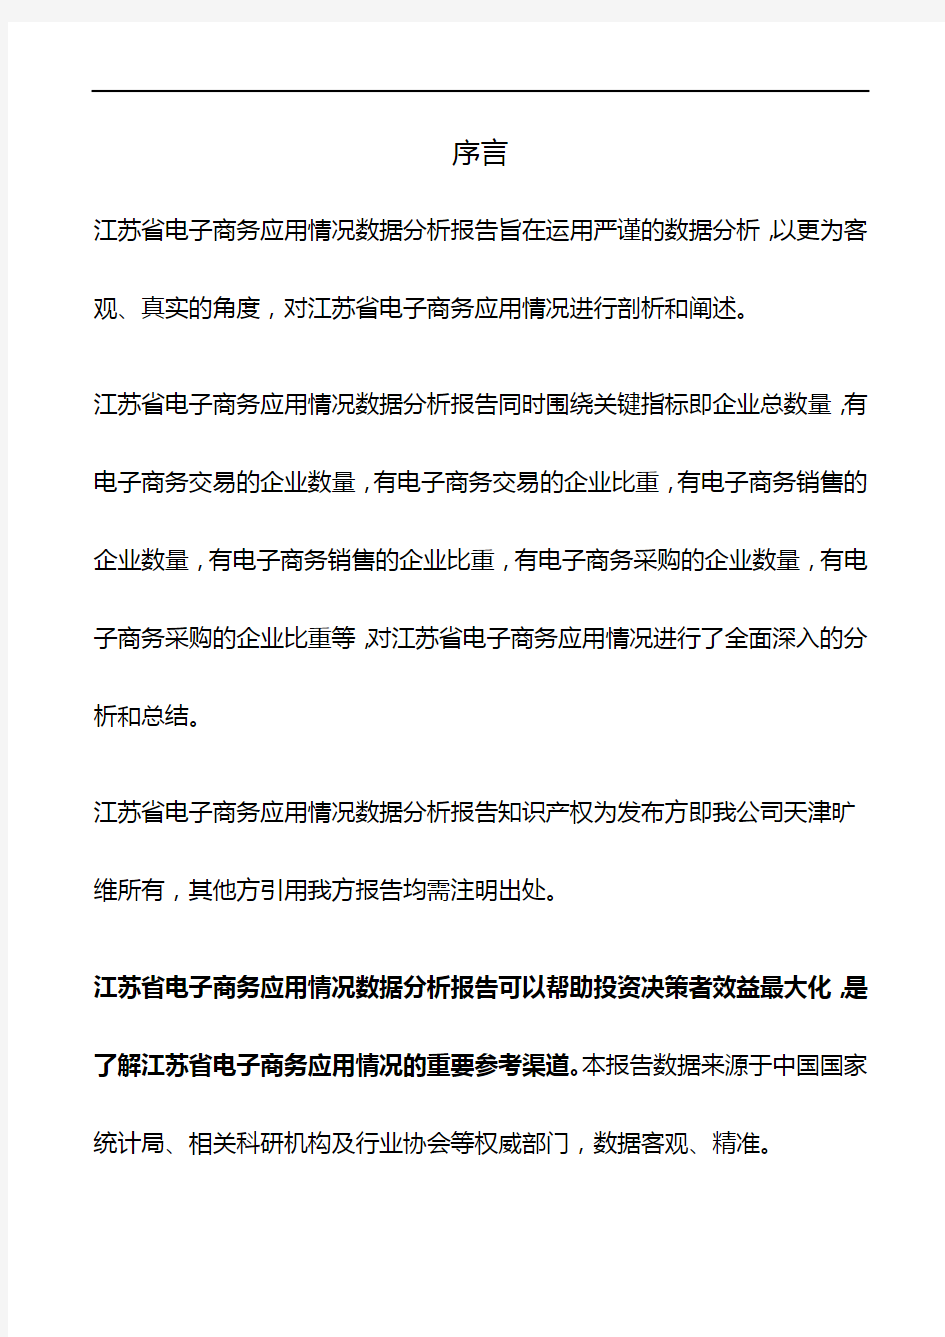 江苏省电子商务应用情况3年数据分析报告2019版